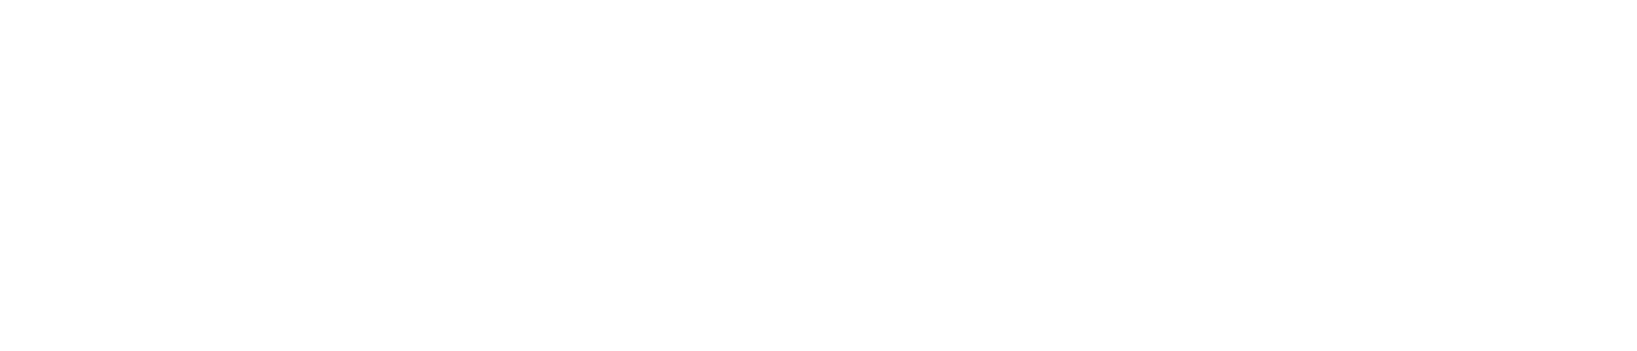 Diageo logo grand pour les fonds sombres (PNG transparent)